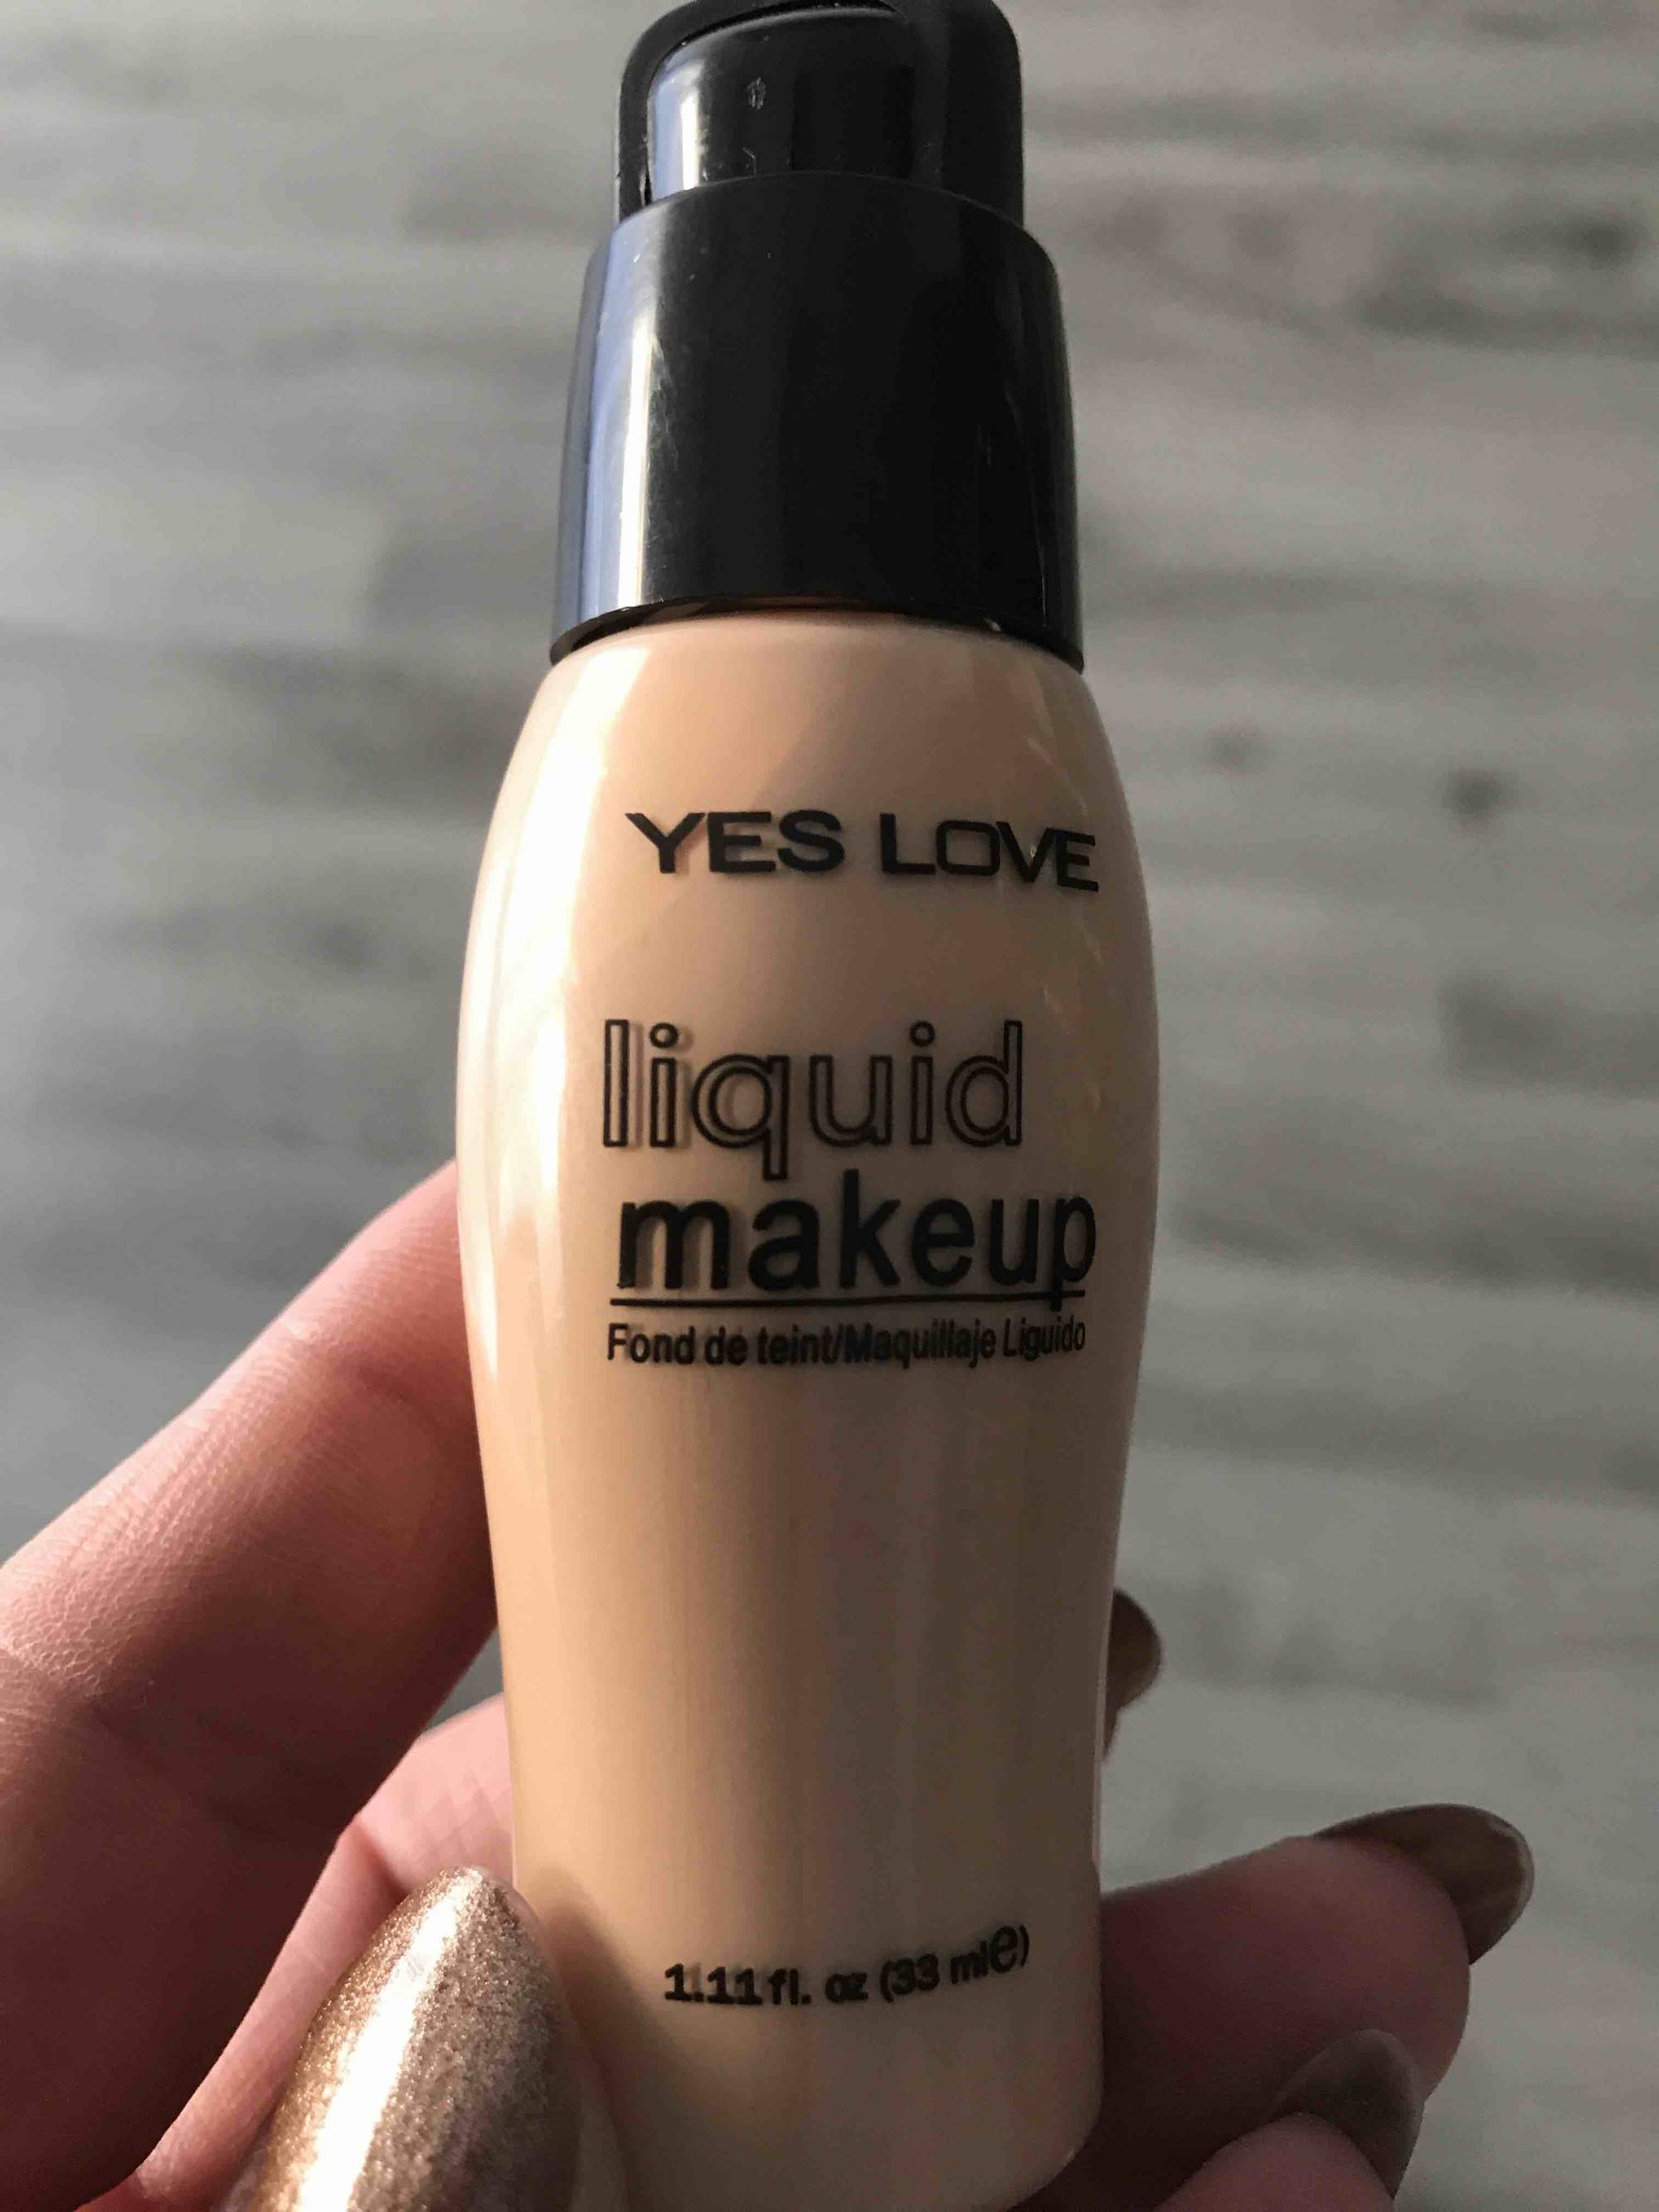 YES LOVE - Liquid makeup - Fond de teint